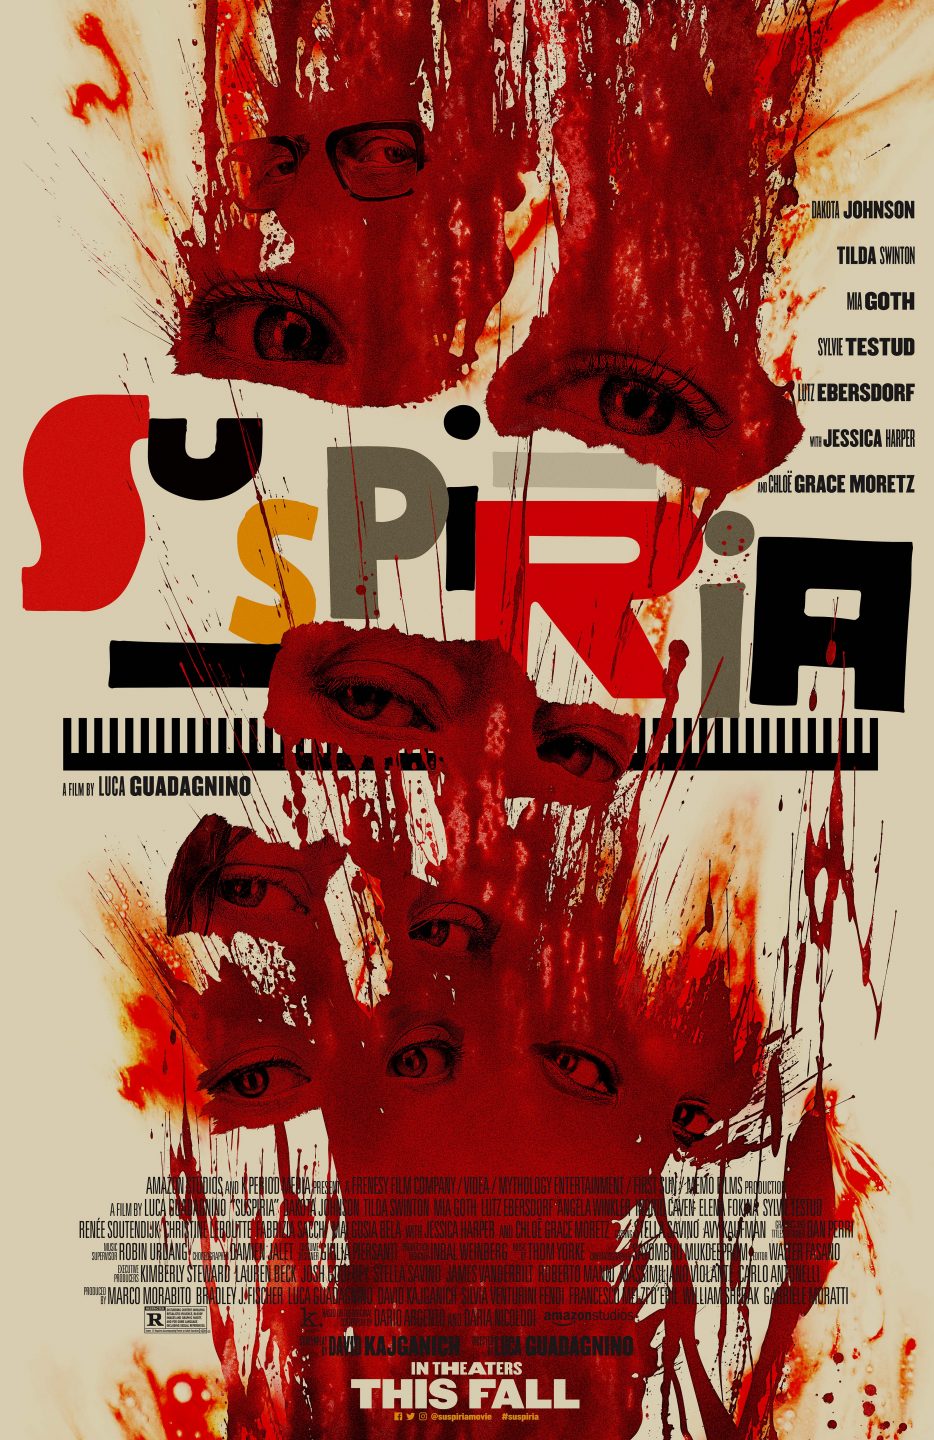 Suspiria poster (Amazon Studios)